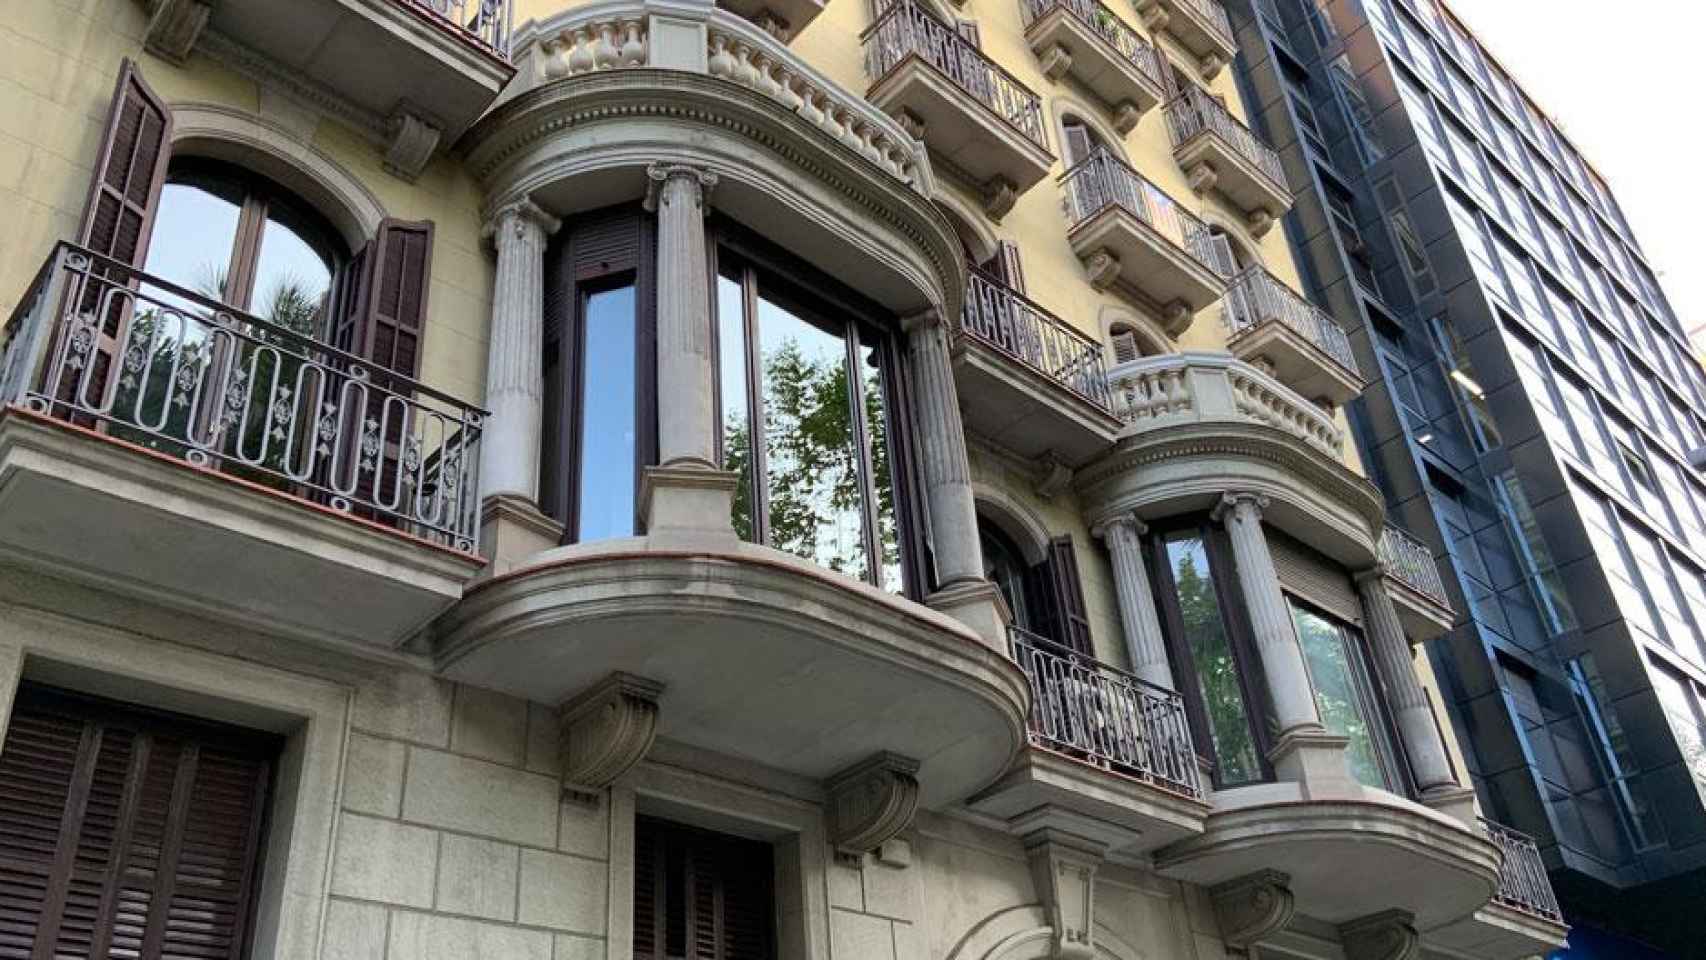 La sede de Qrenta, fundada por Jordi Martí y situada en la avenida Diagonal de Barcelona / CG